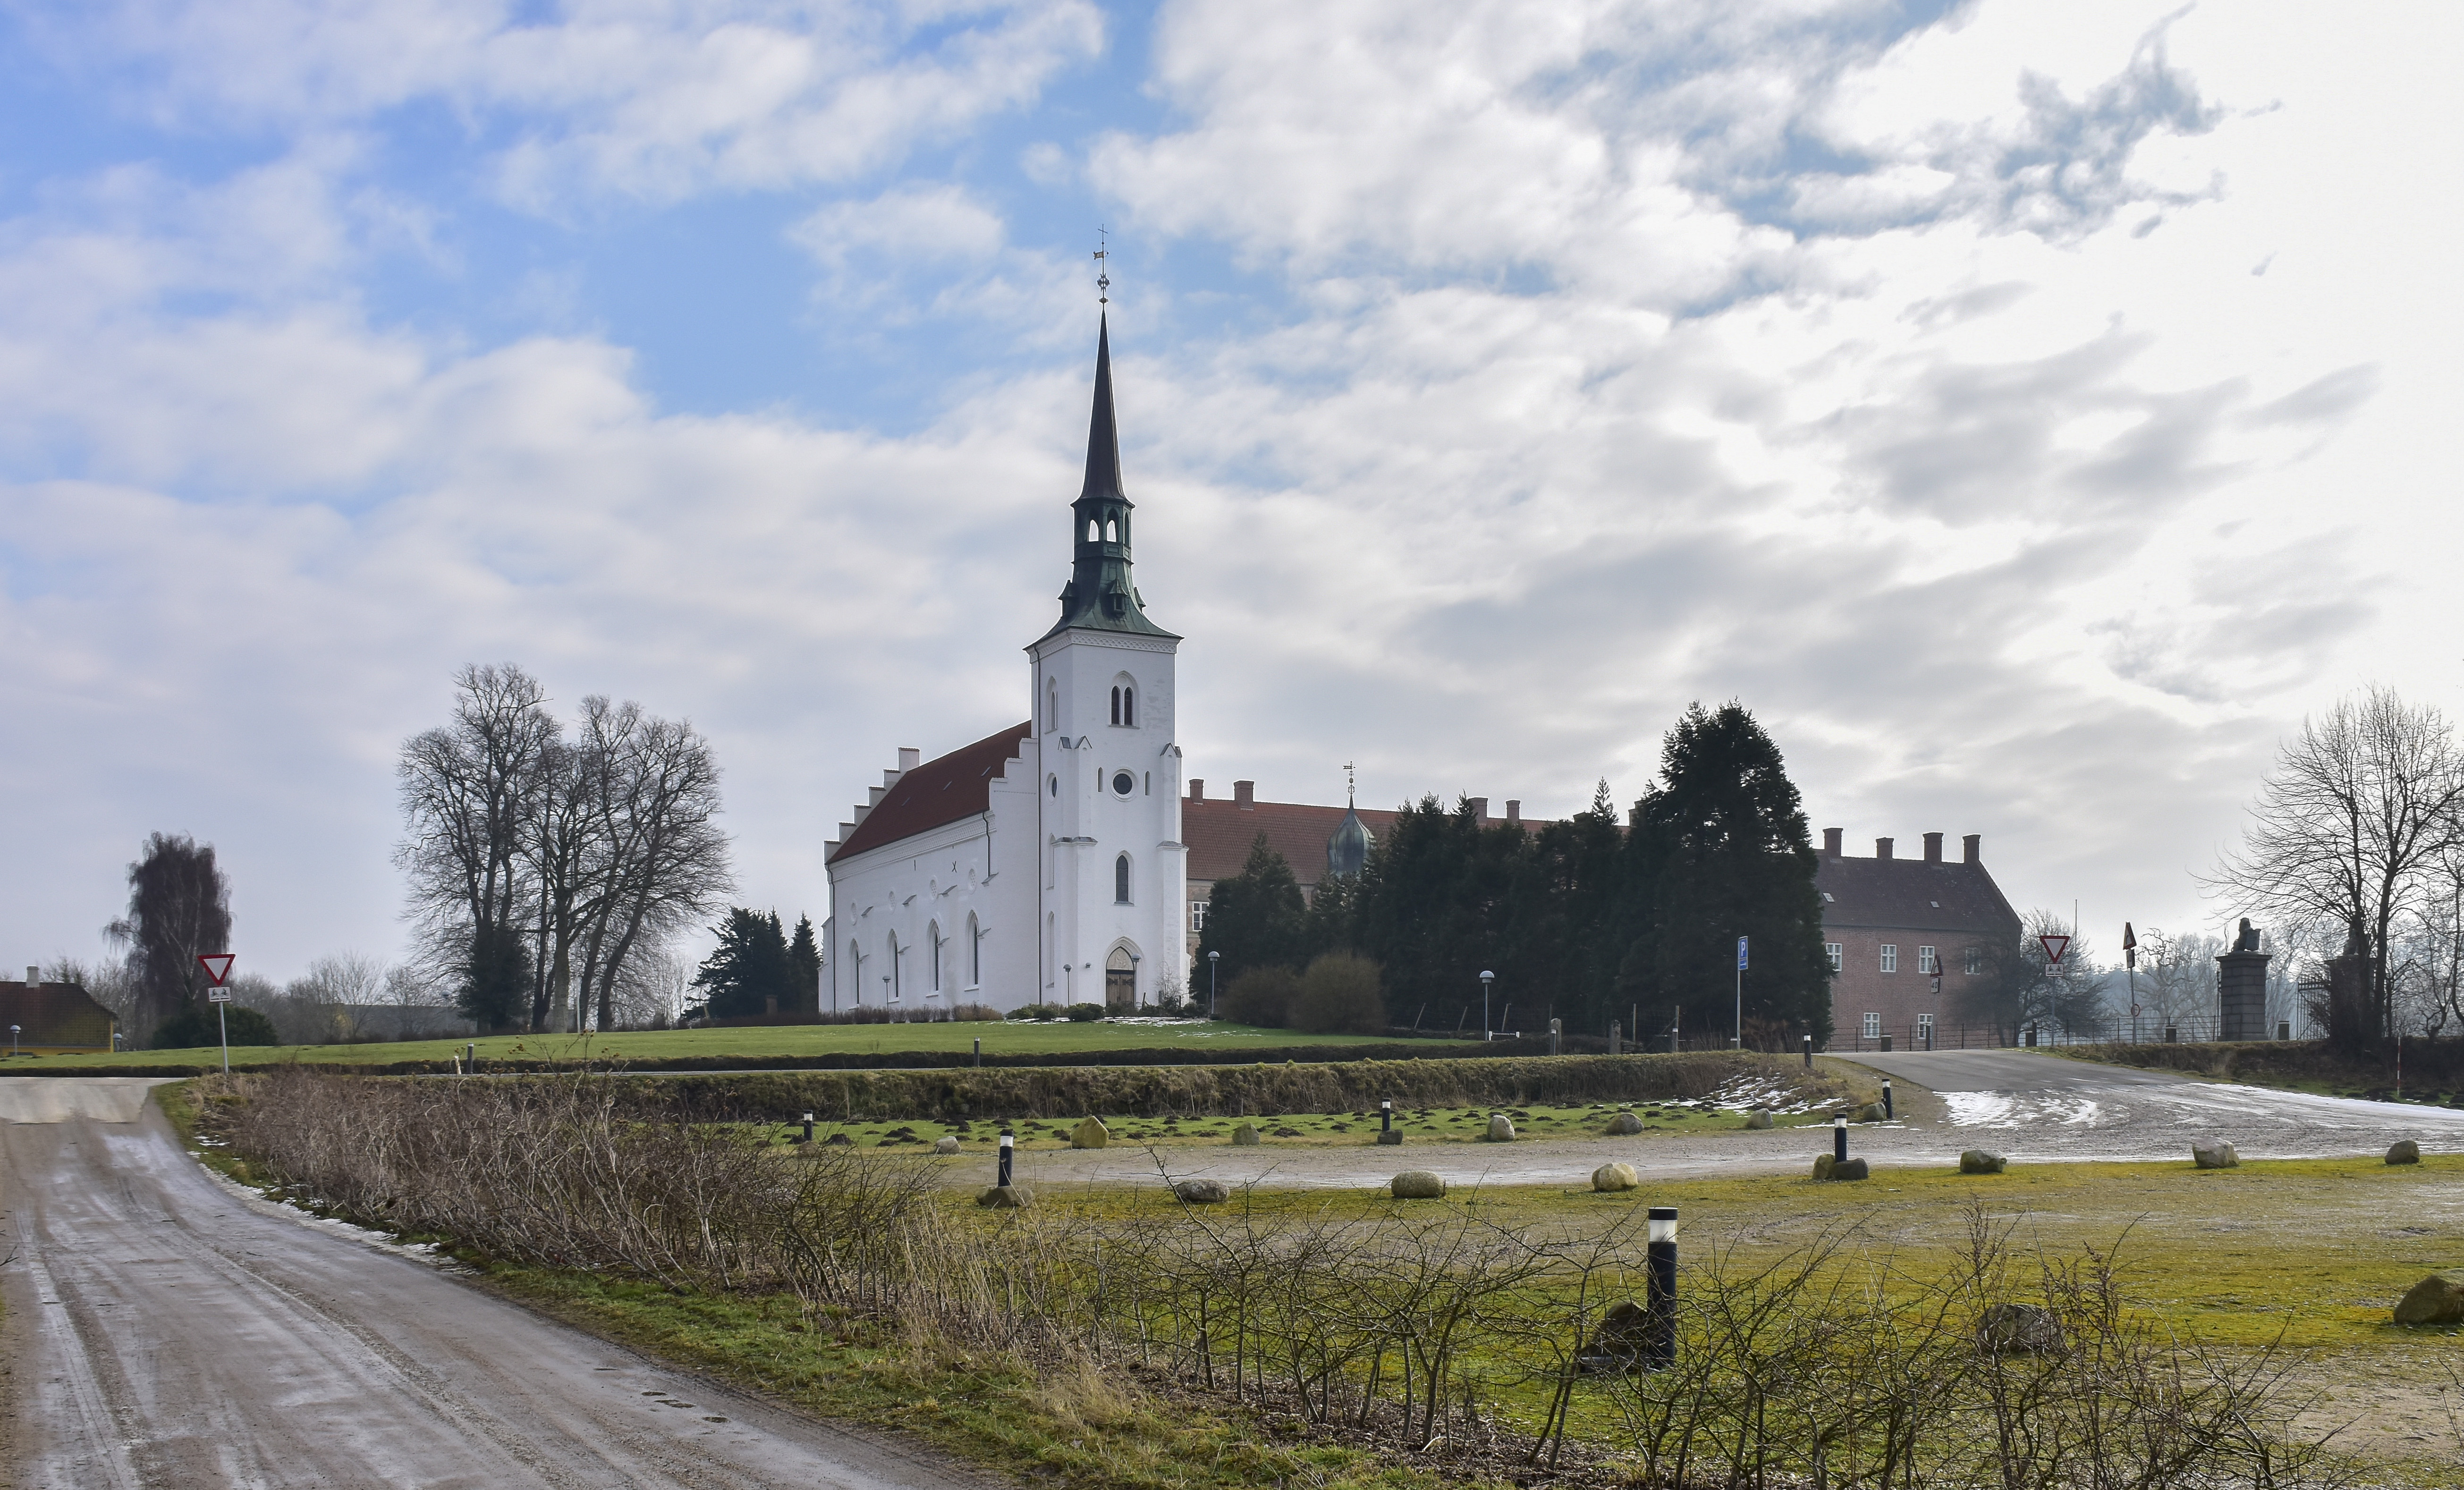 Brahetrolleborg Kirke